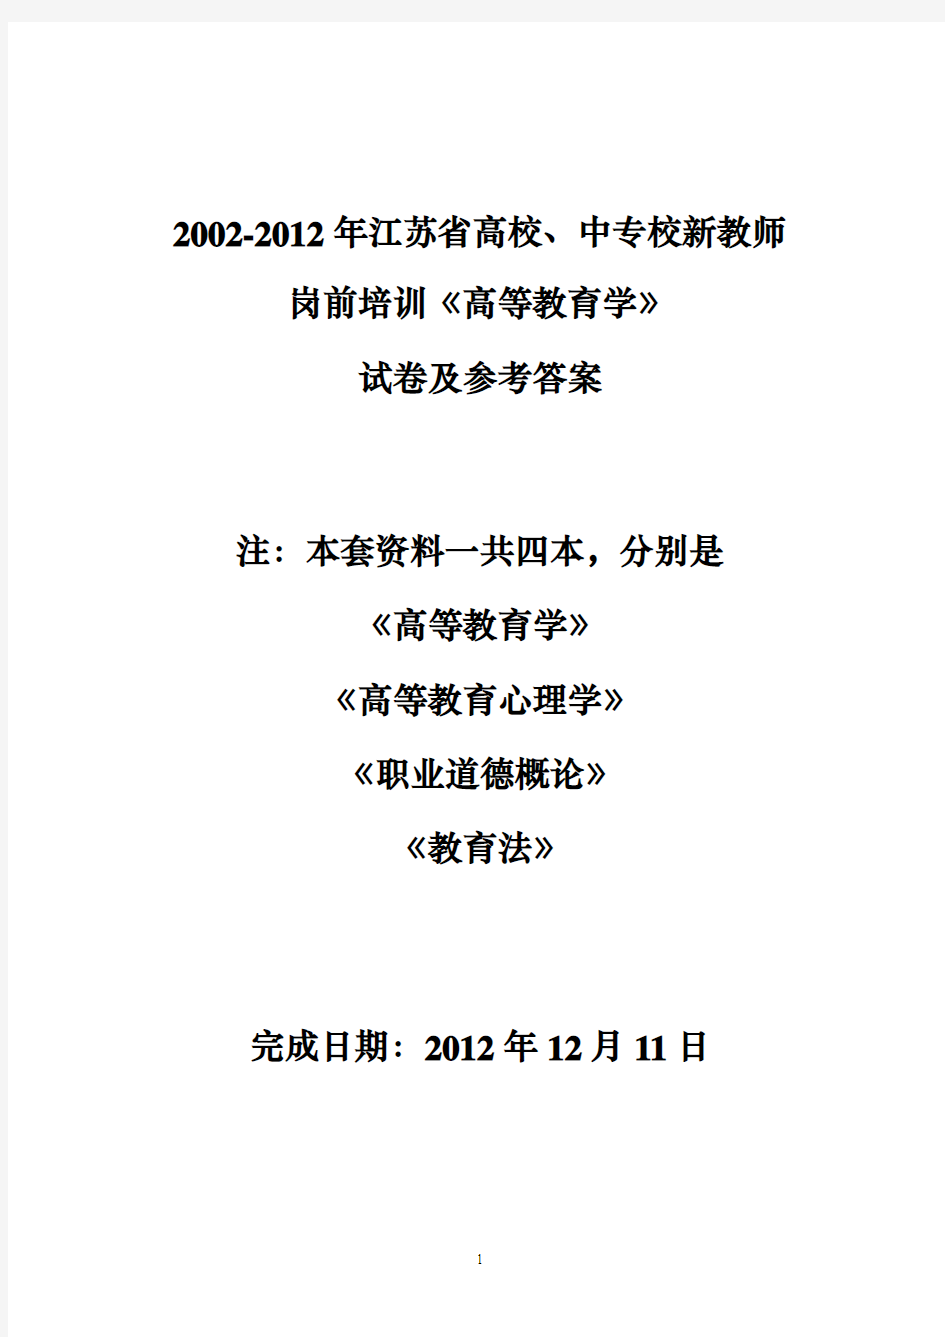 2002-2012年江苏省高校中专校教师岗前培训《高等教育学》试卷及参考答案(2012.12.11)